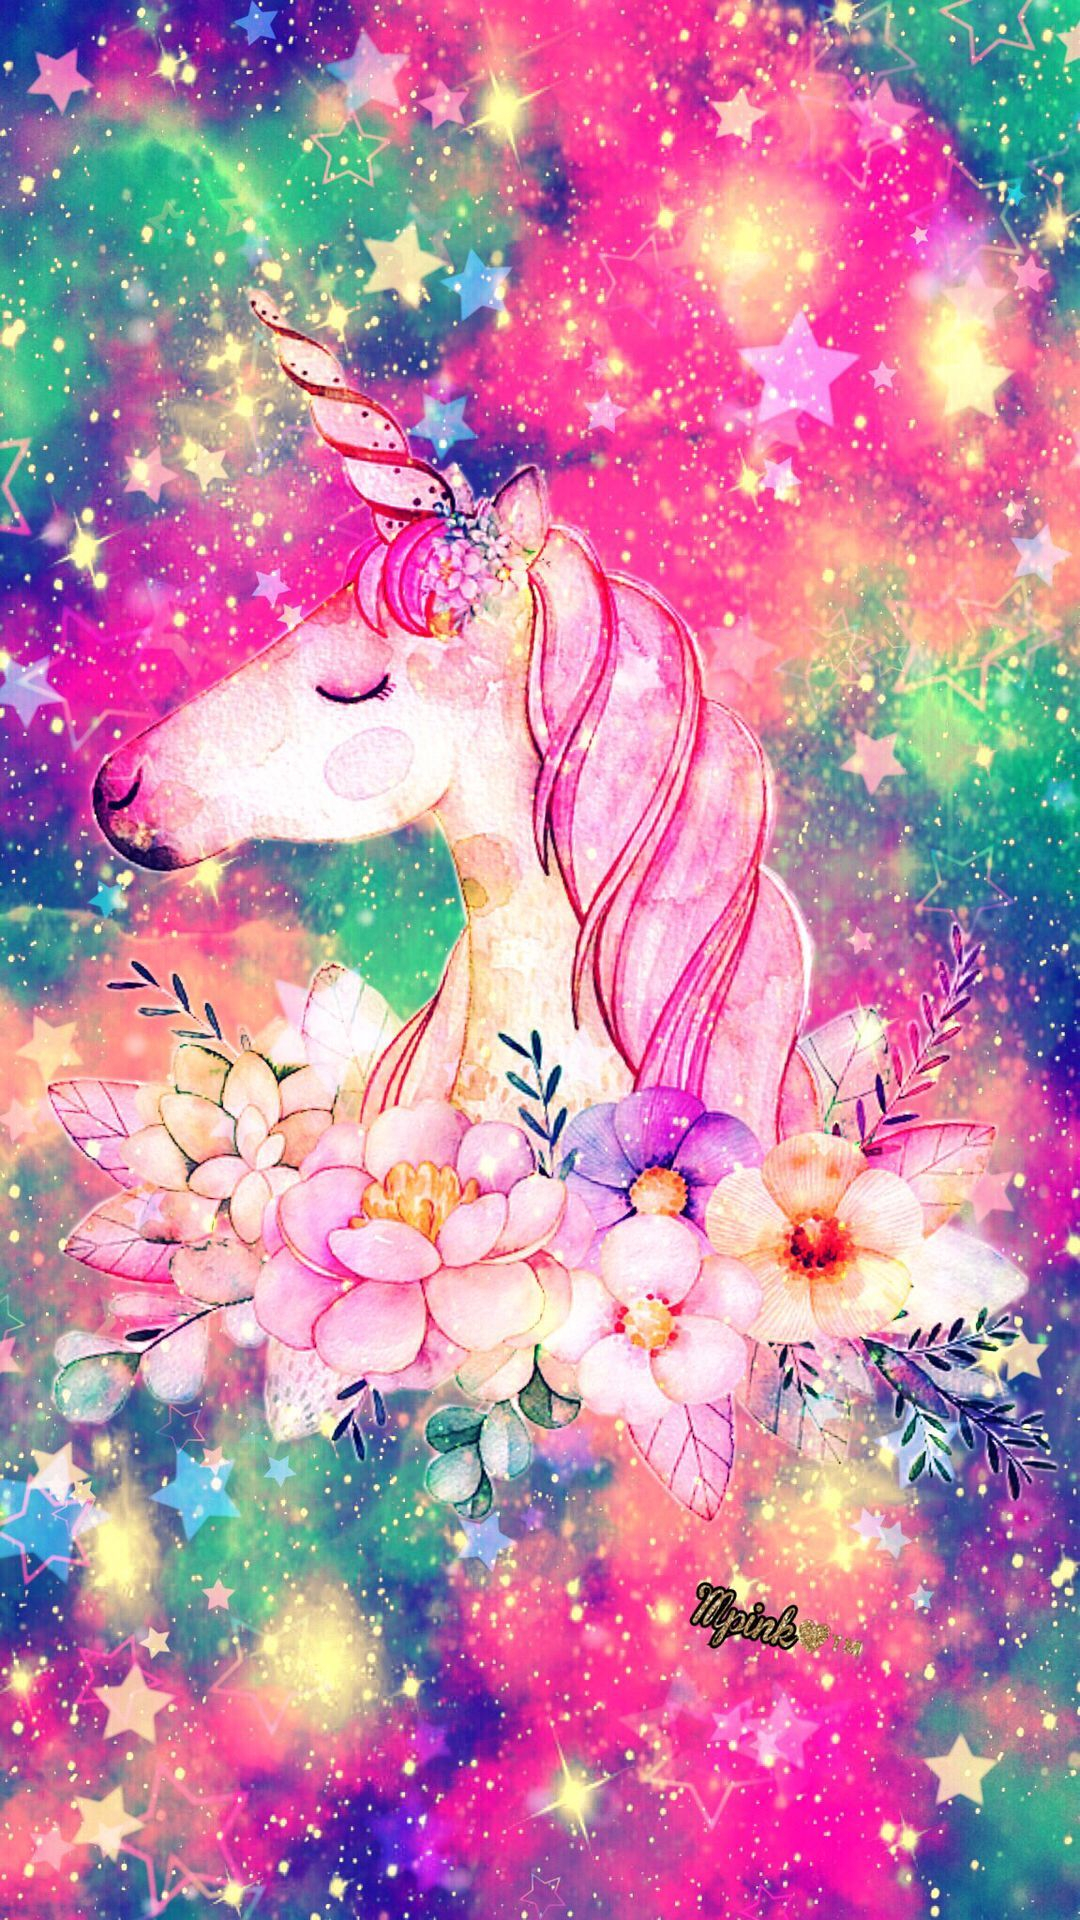 1080x1920 Pink Glitter Unicorn Wallpapers Top Free Pink Glitter Unicorn Backgrounds